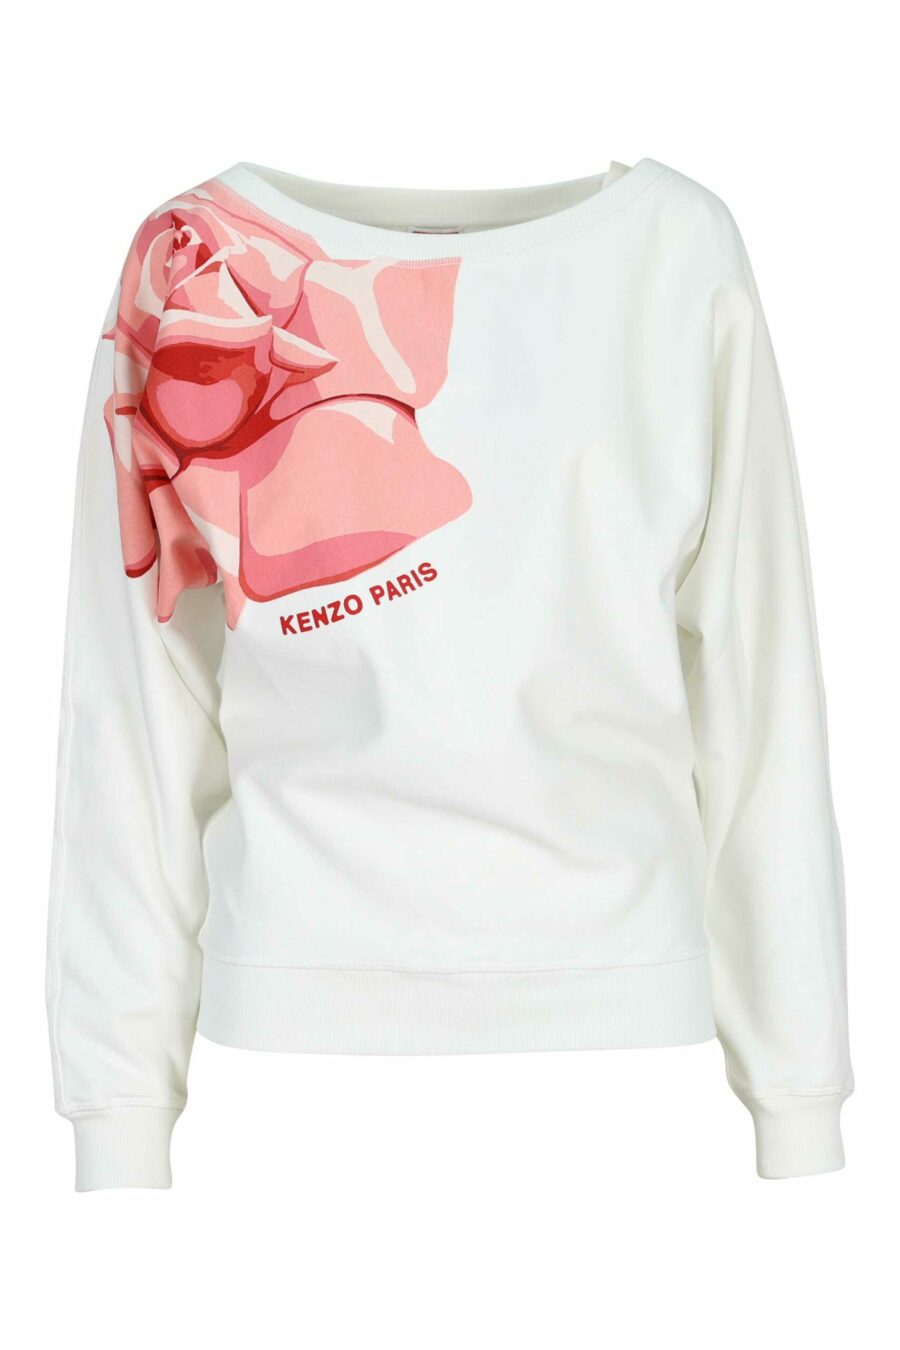 Weißes Sweatshirt mit "kenzo rose" Maxilogo an der Seite - 3612230632318 skaliert